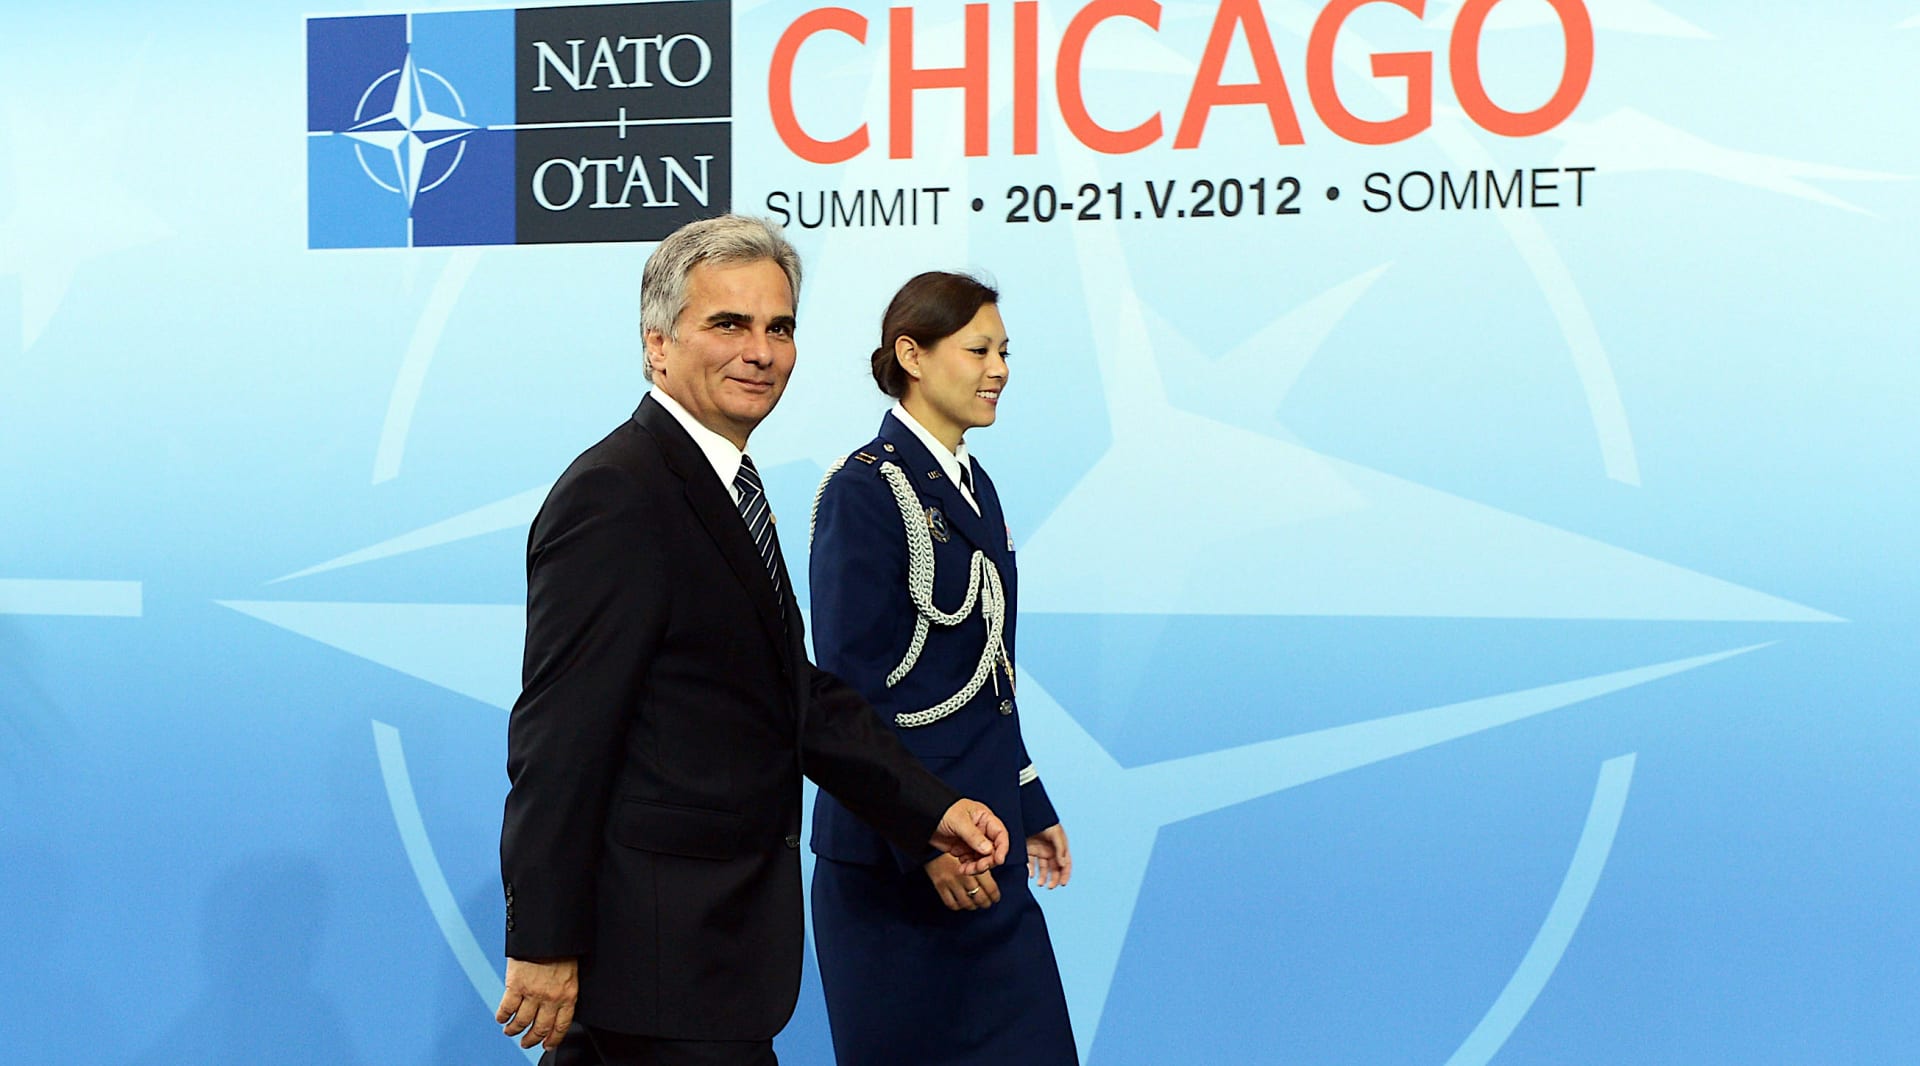 Tradičně neutrální Rakousko není členem NATO, ale jeho představitelé se některých akcí Aliance účastní jako bývalý kancléř Werner Faymann v roce 2012 v Chicagu.